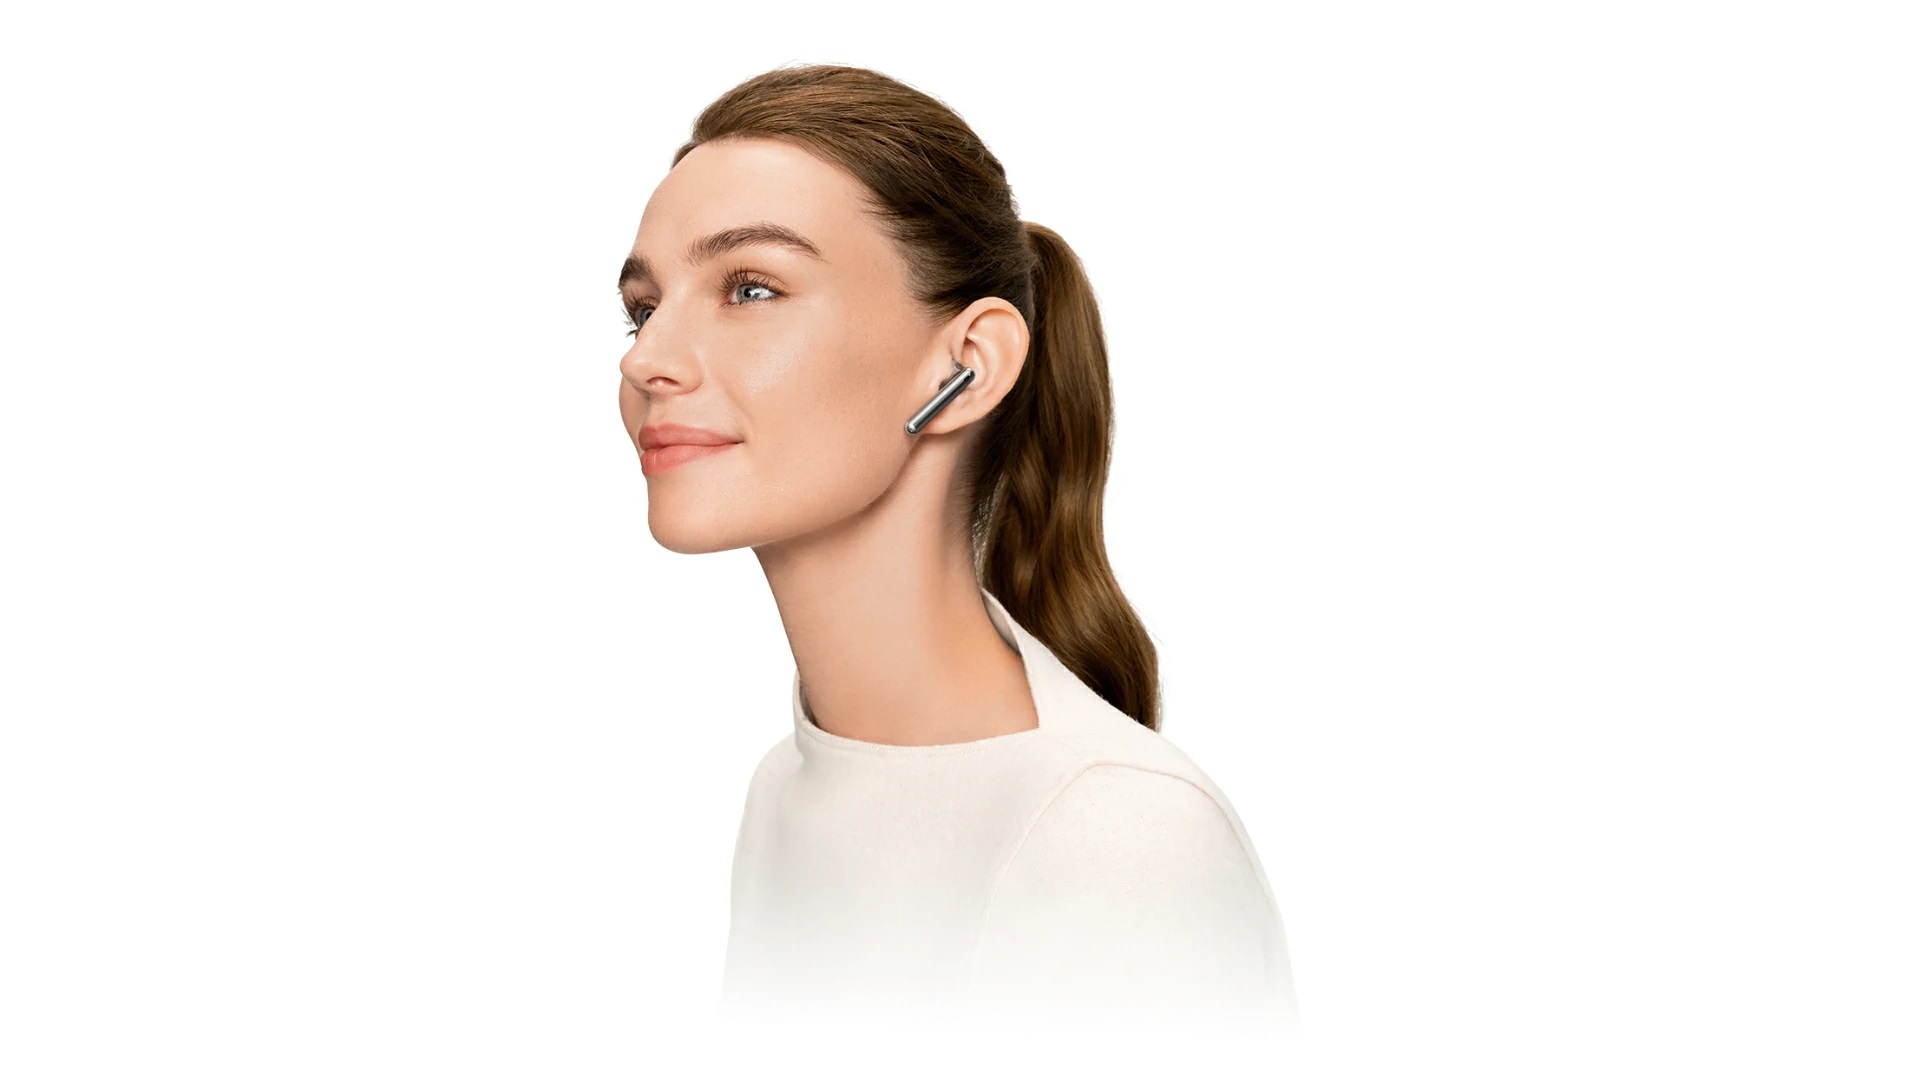 słuchawki bezprzewodowe TWS Huawei FreeBuds 4E